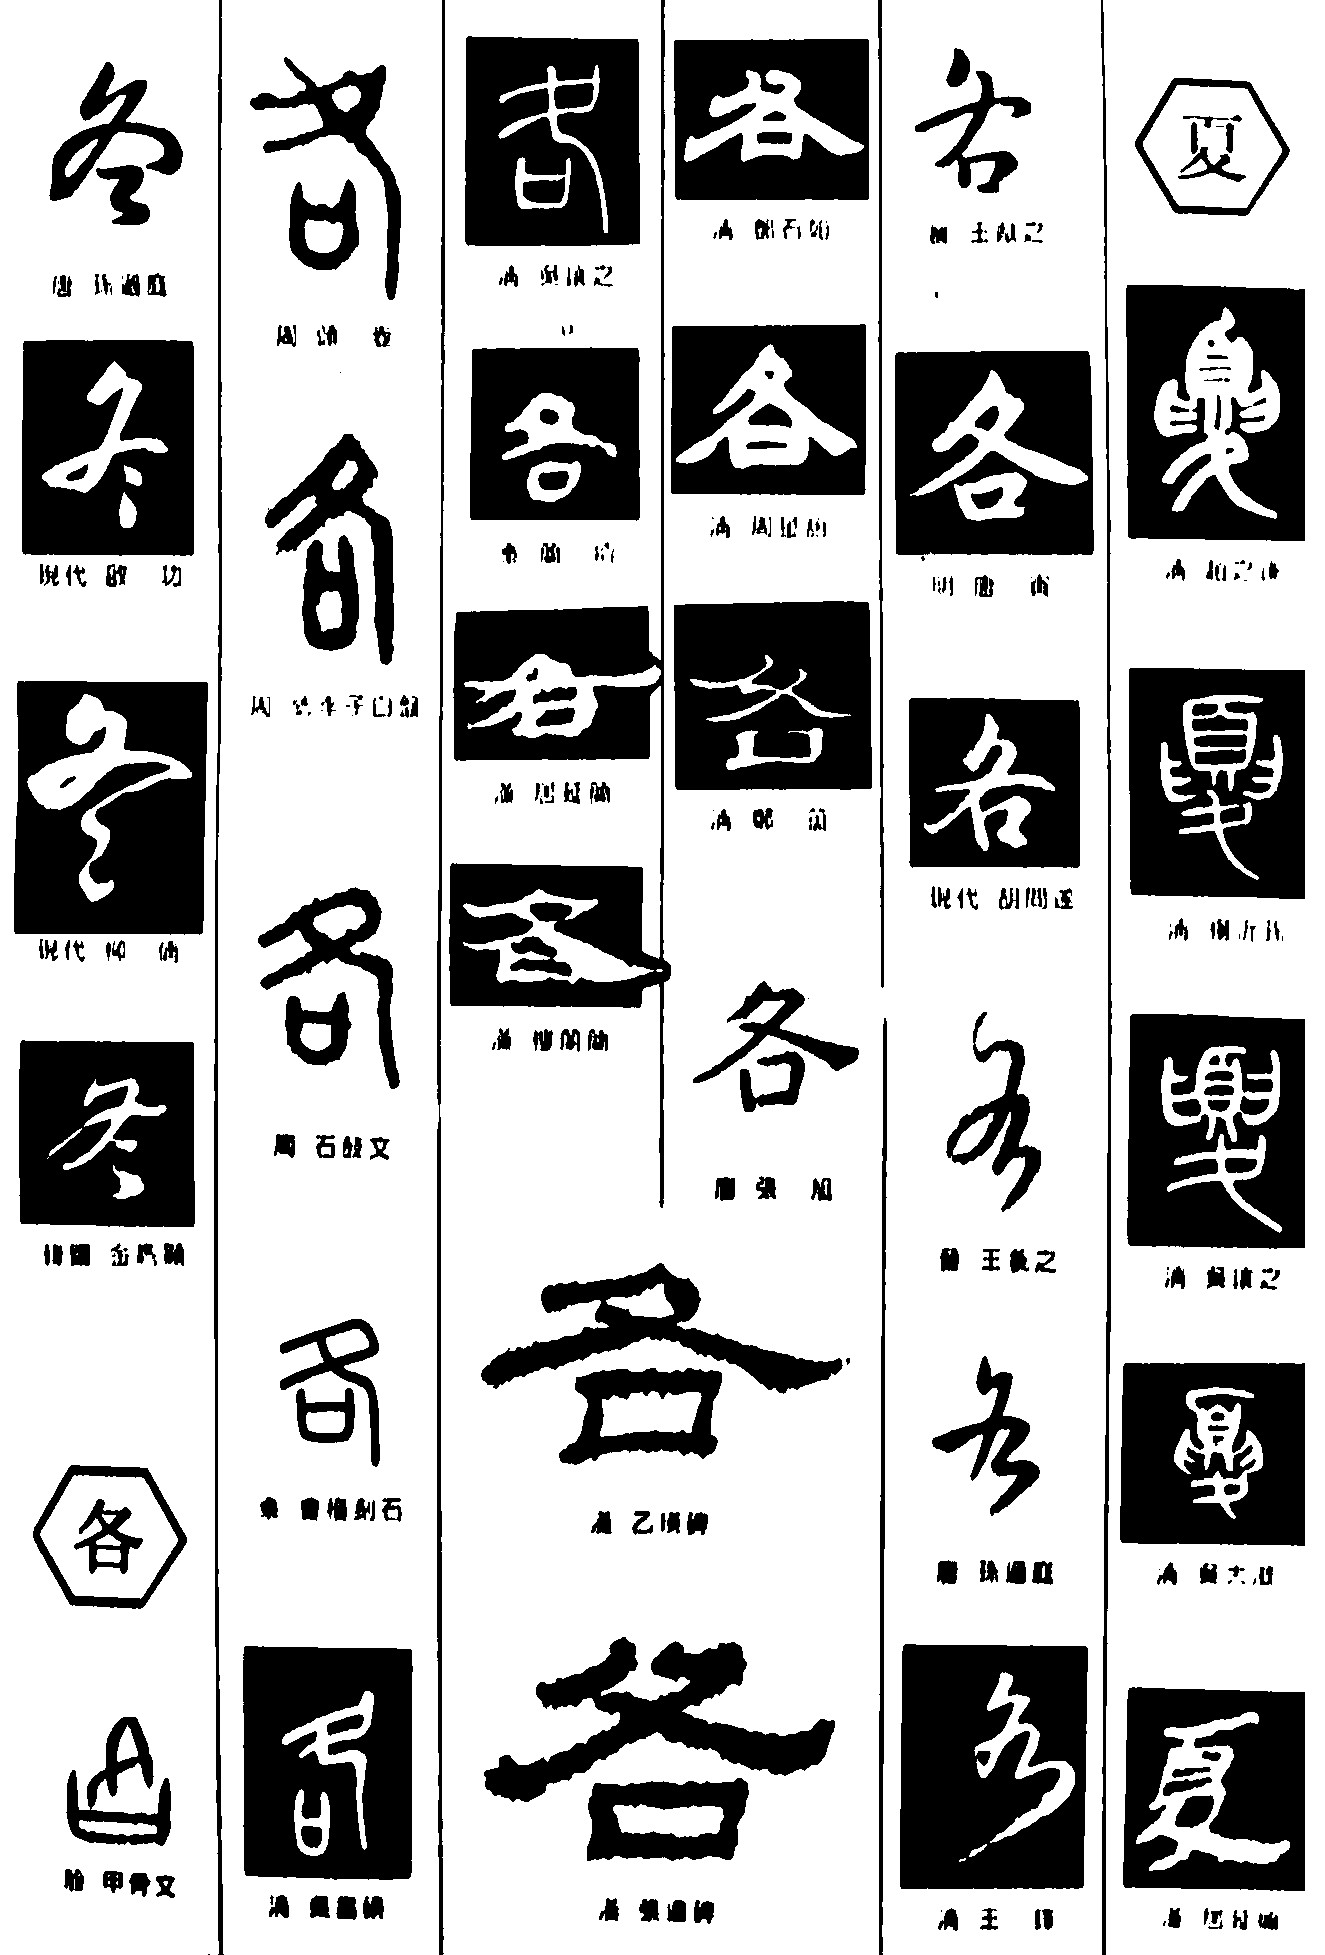 中国书法五种主要字体图片